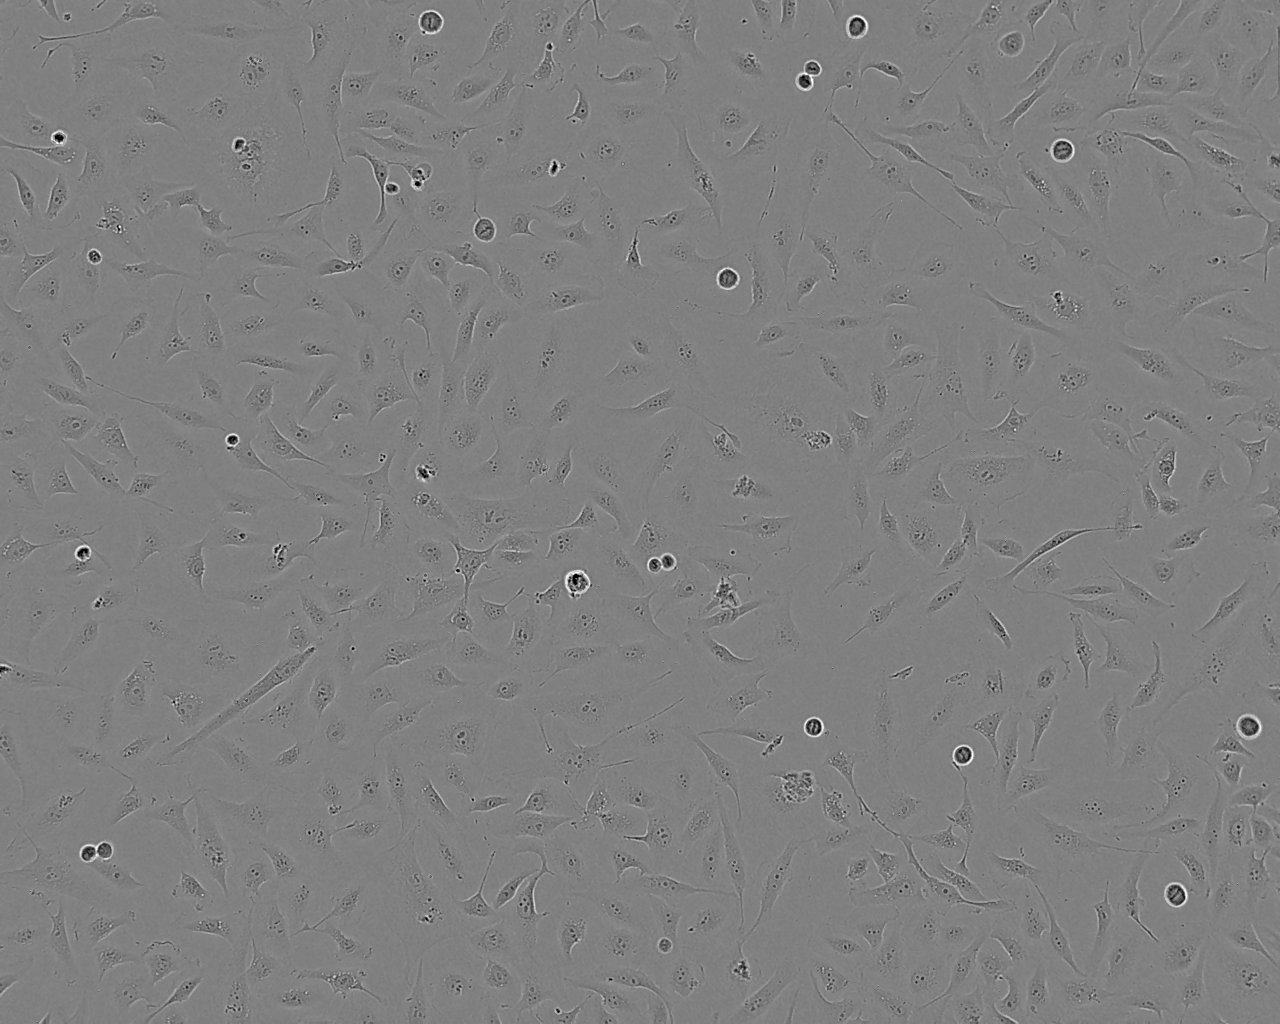 184A1 Cell:人乳腺上皮细胞系,184A1 Cell